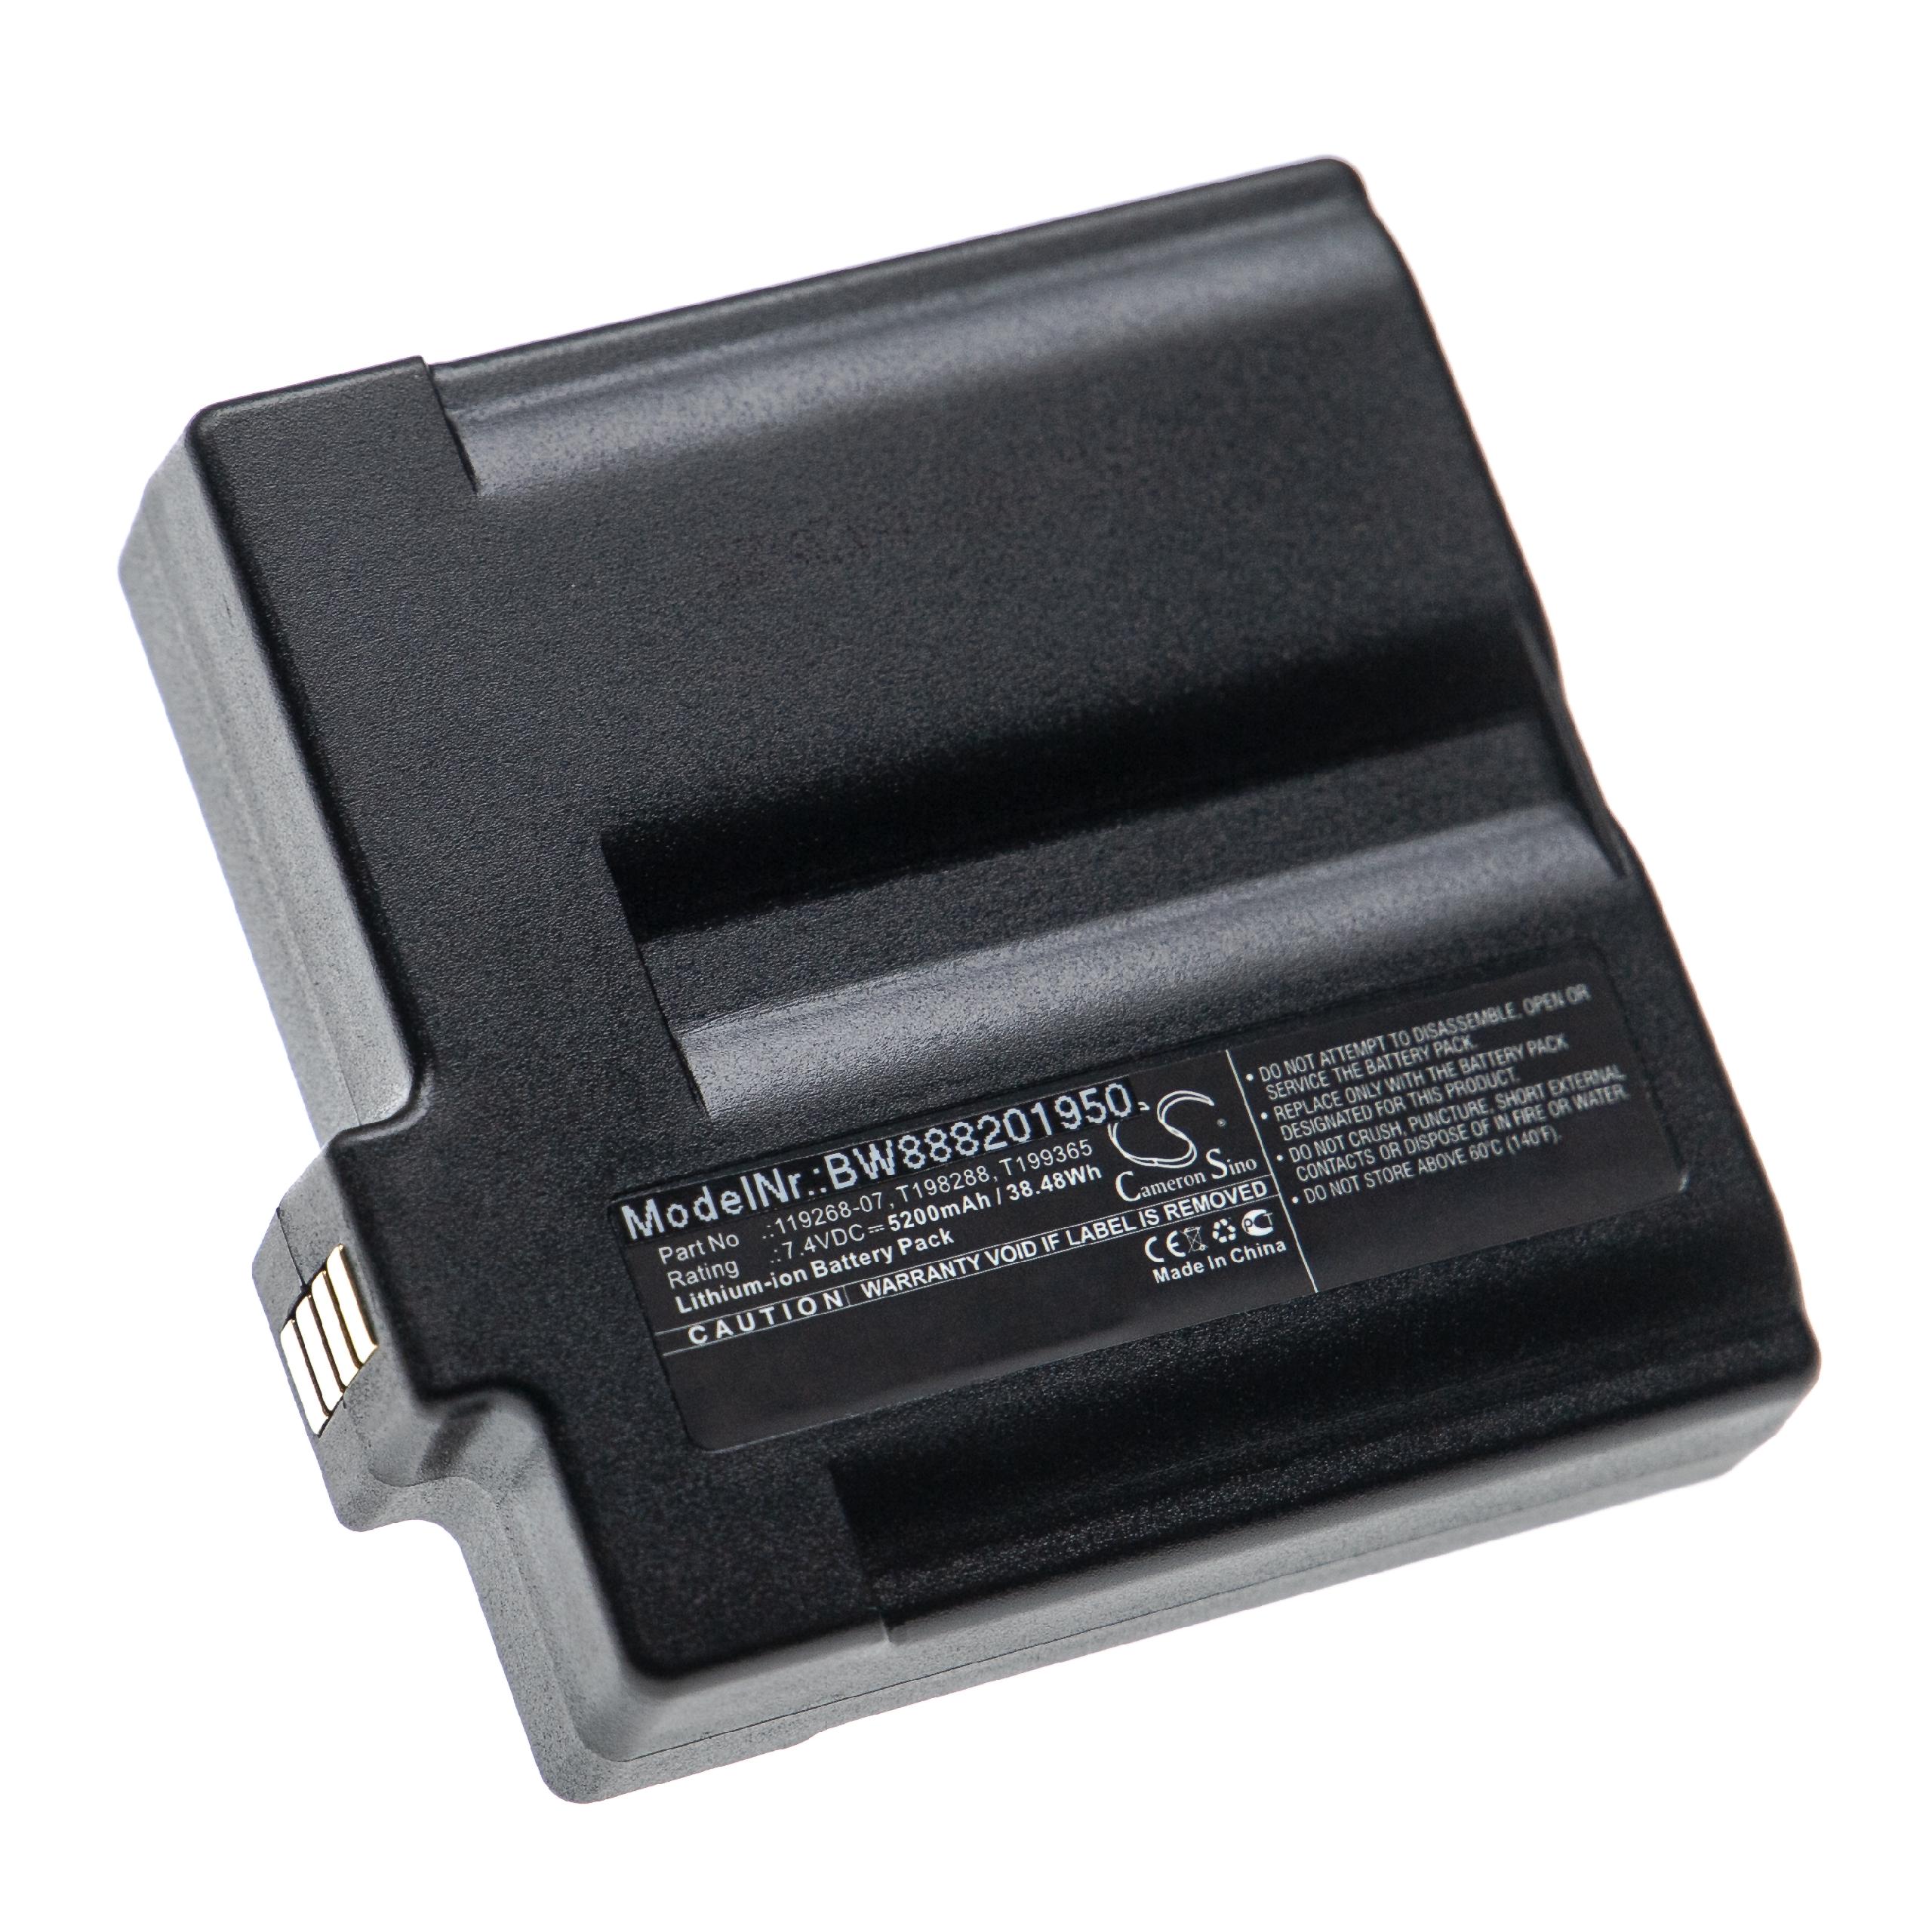 Thermal Imaging Camera Battery Replacement for Flir 119268-07, 1195268-02, 1195268-06 - 5200mAh 7.4V Li-Ion